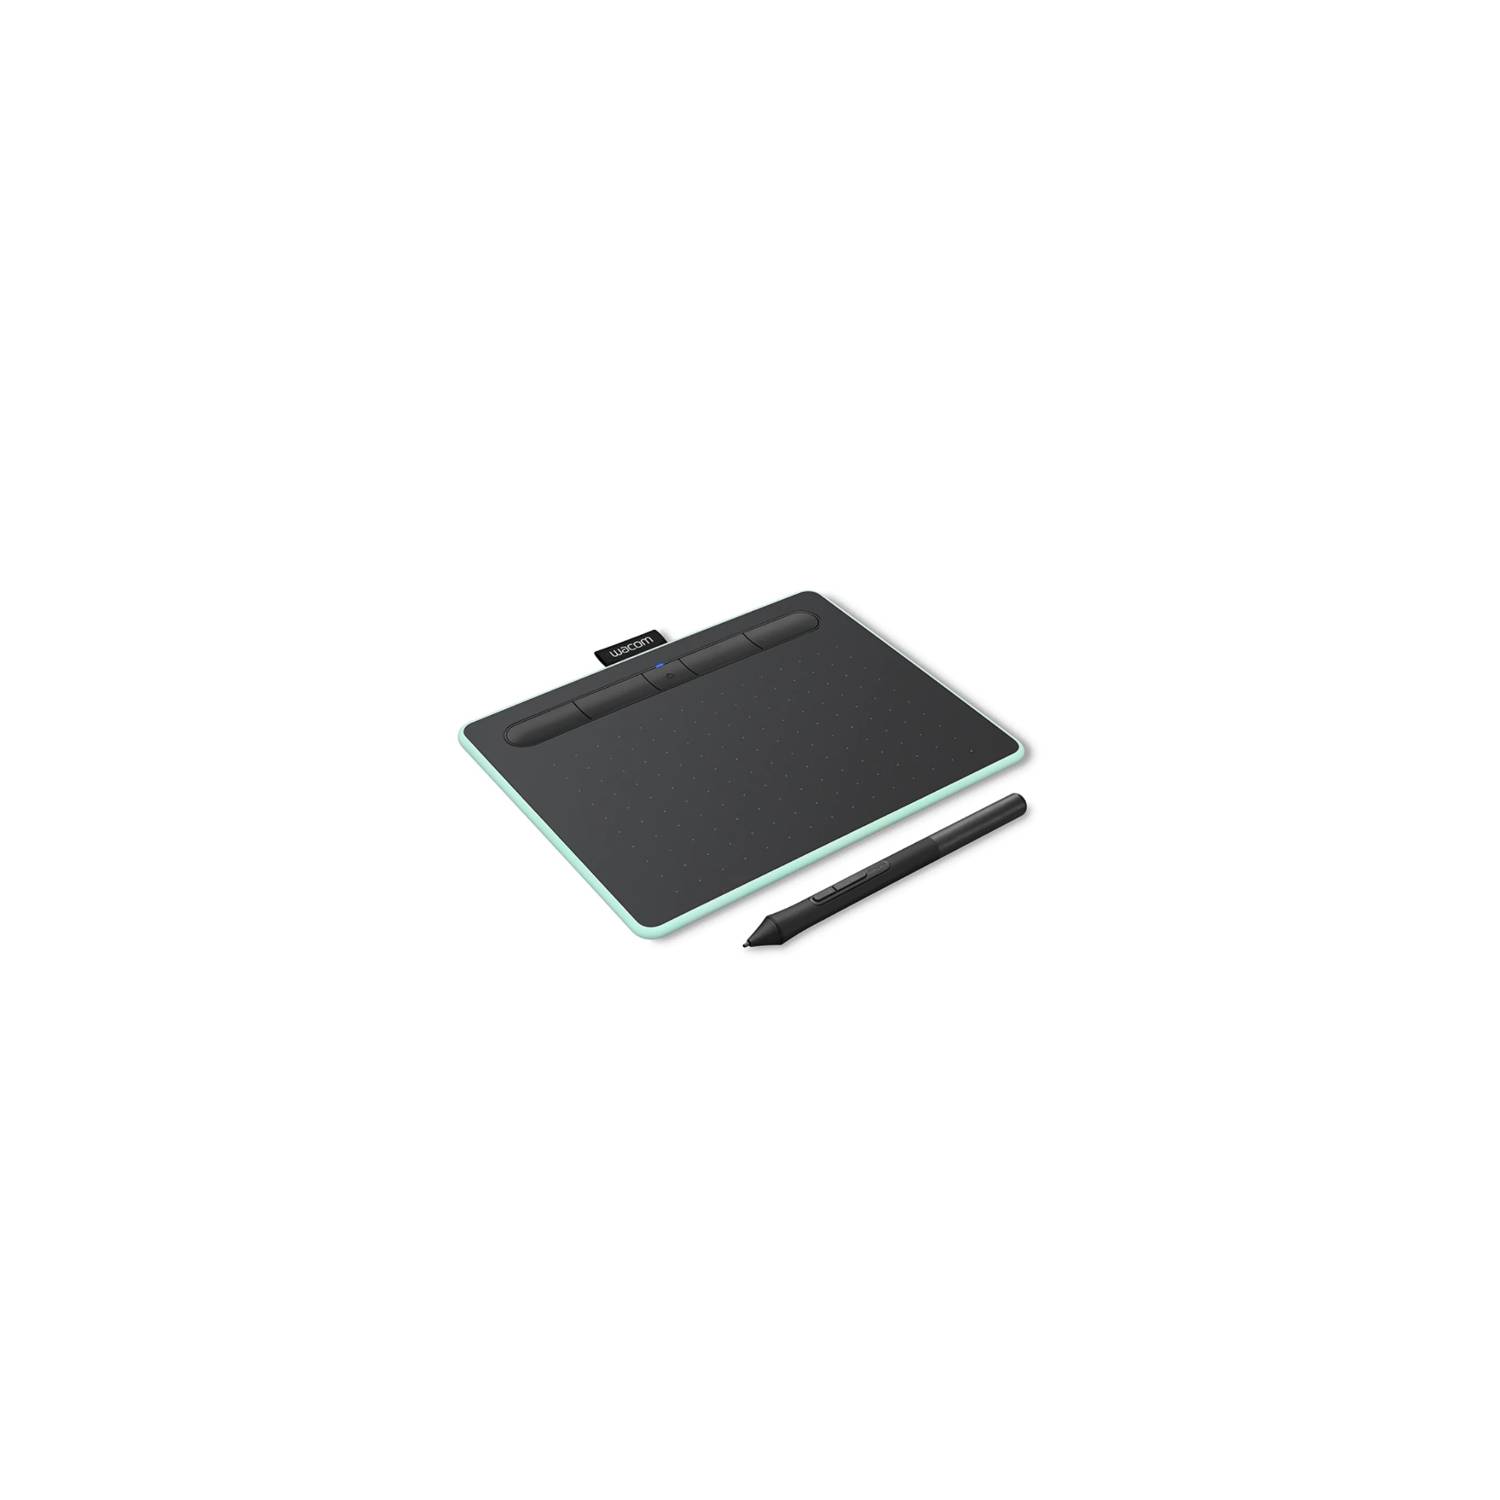 Tableta Grafica Wacom Intuos Medium Bluetooth Pistacho